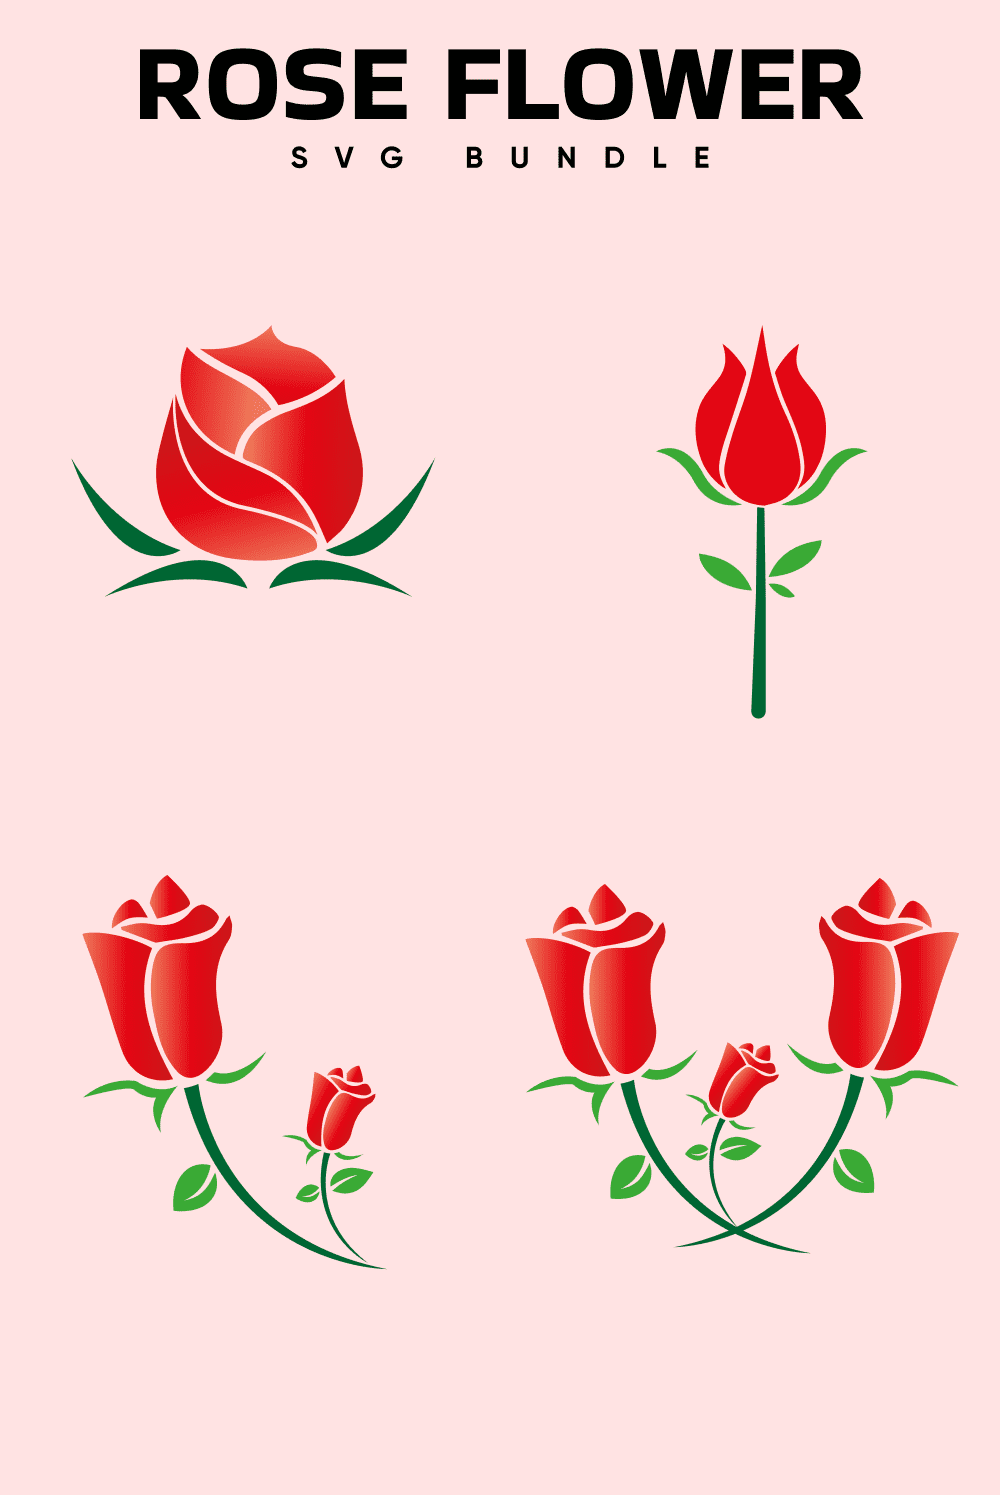 Rose Flower Svg - Pinterest.